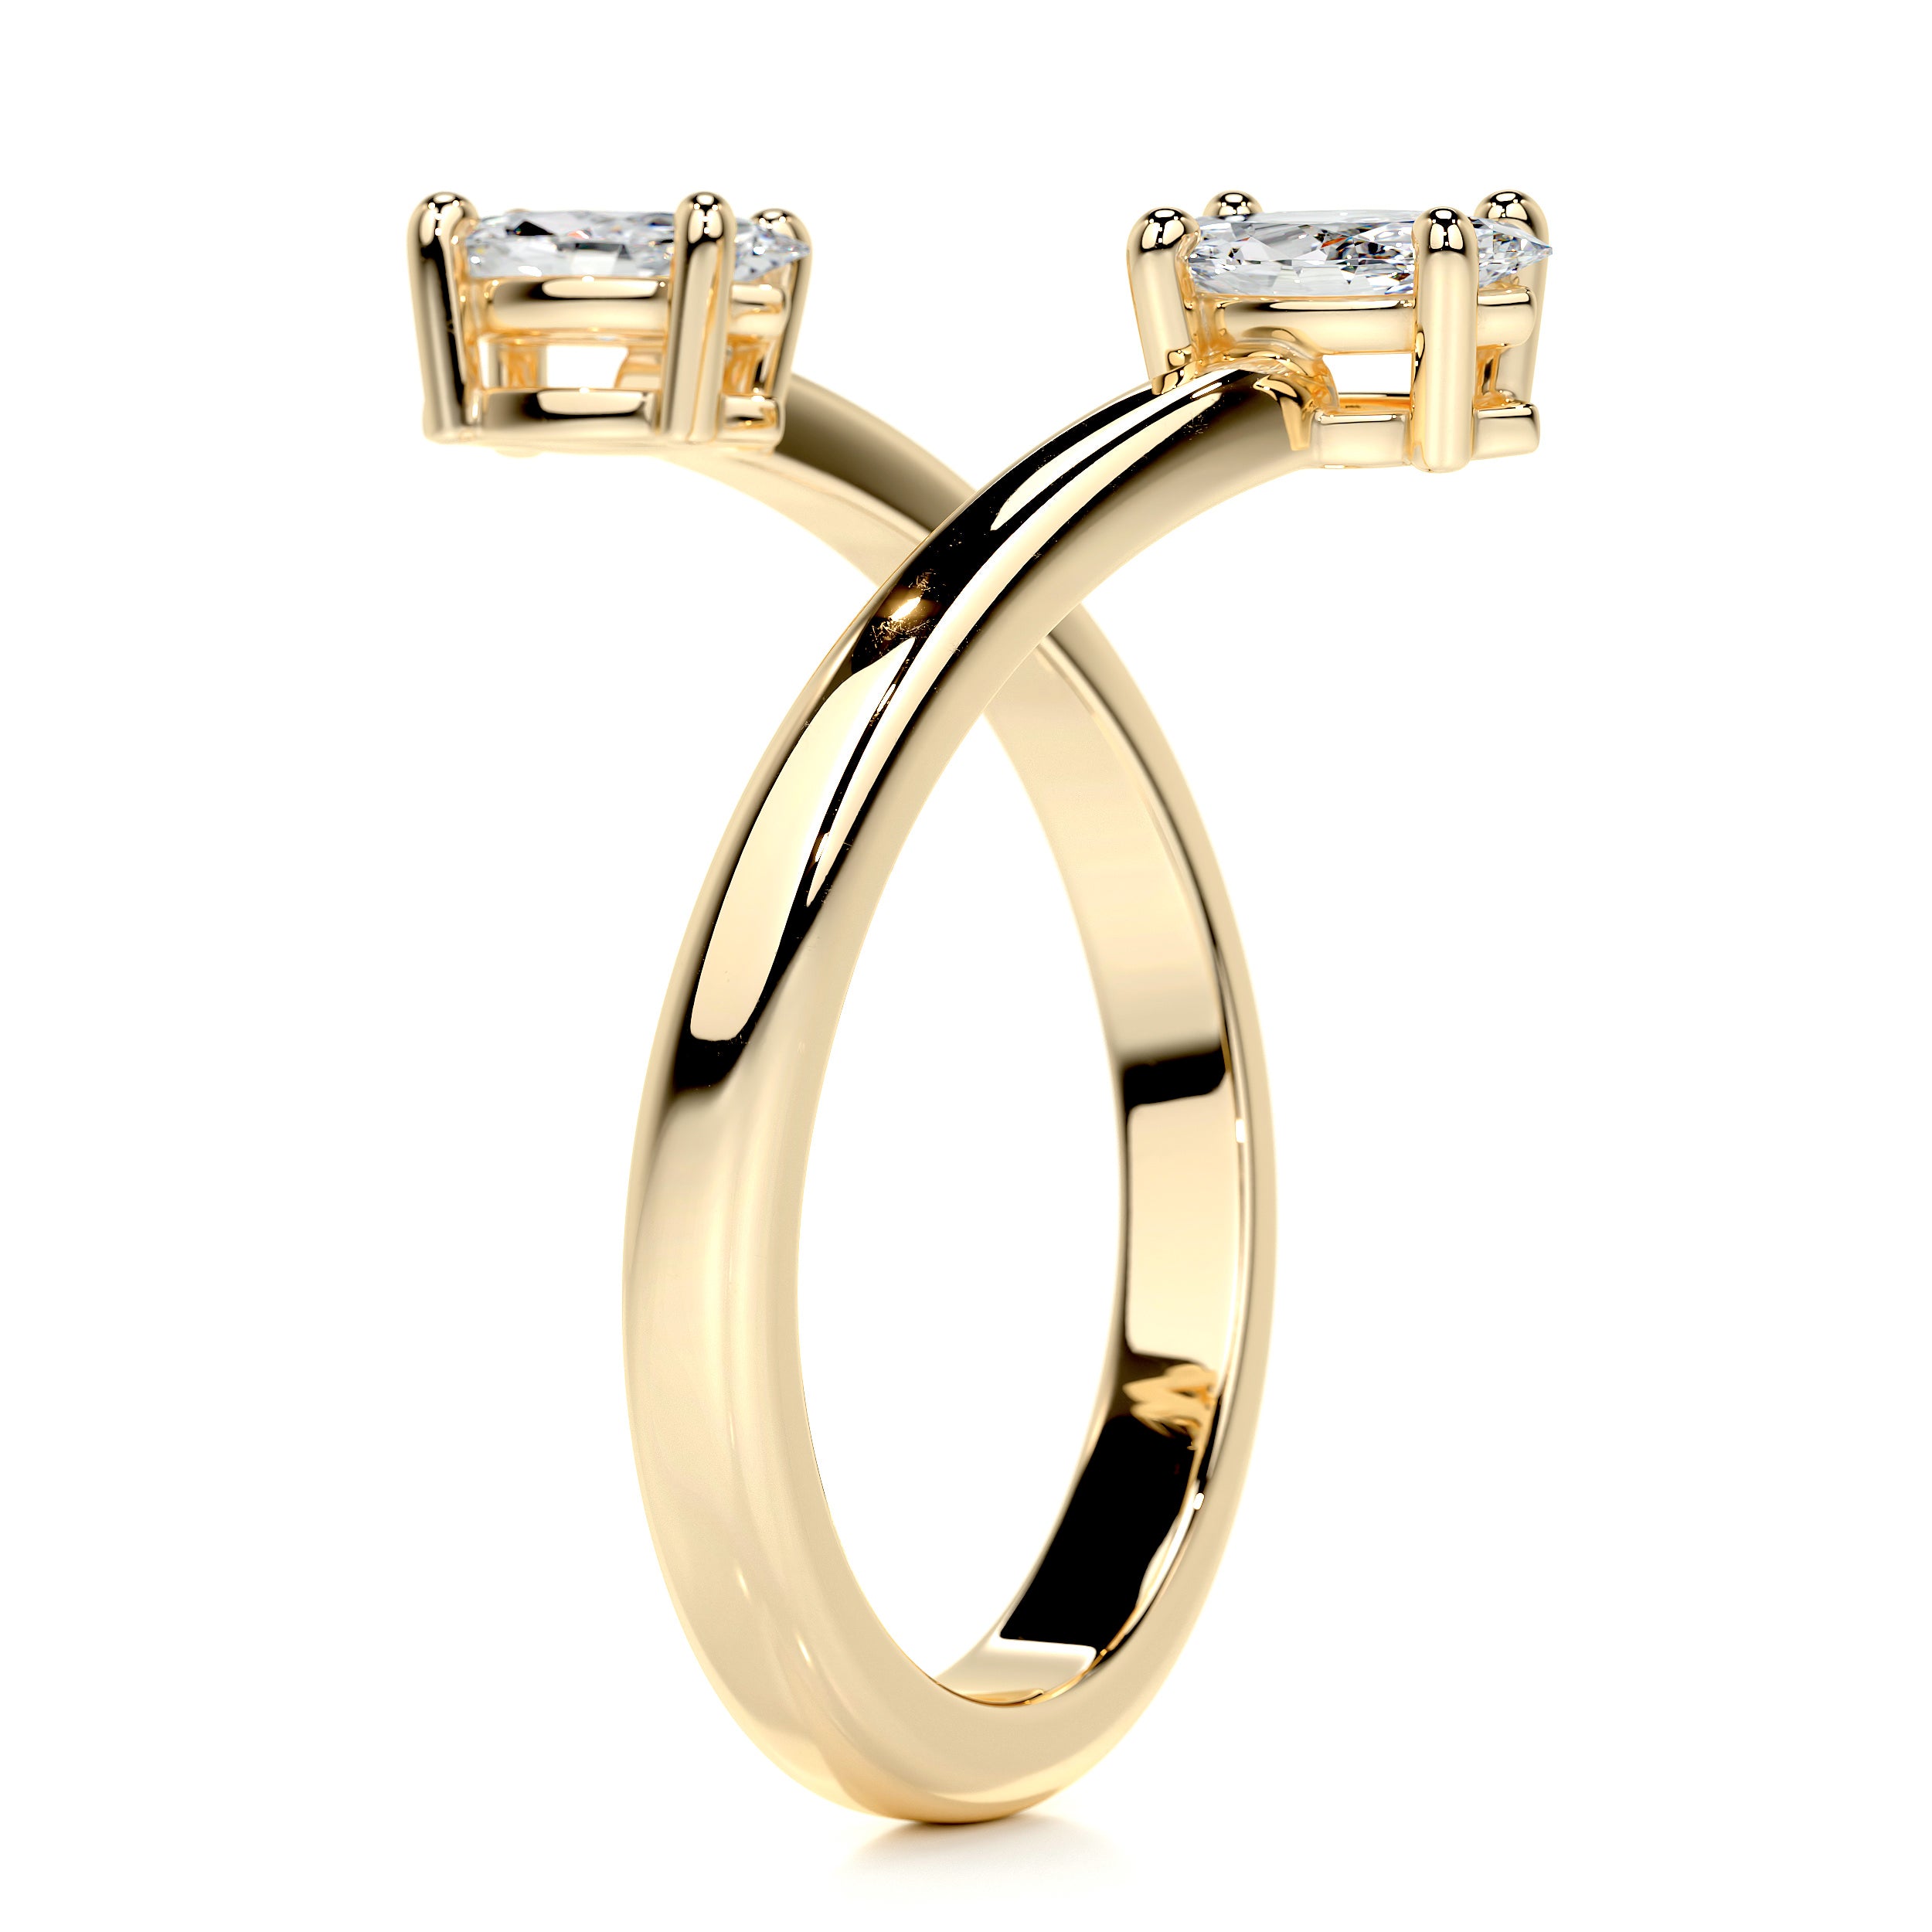 Anita Fashion Ring   (0.36 Carat) -18K Yellow Gold